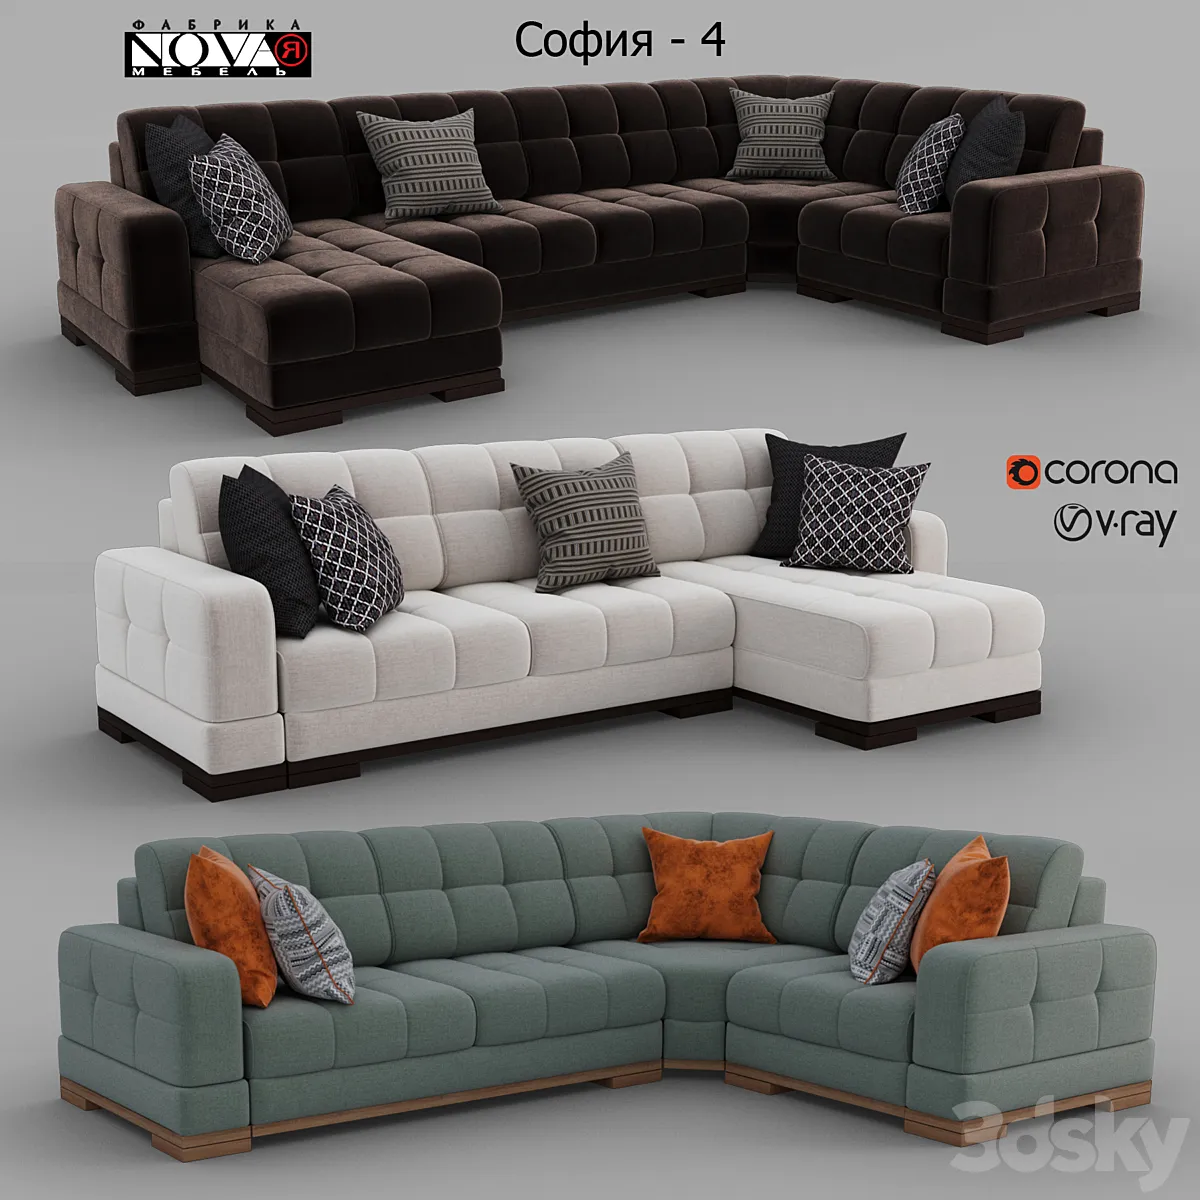 3dsky - Sofas Sofia - 4 Factory NOVAYA Furniture